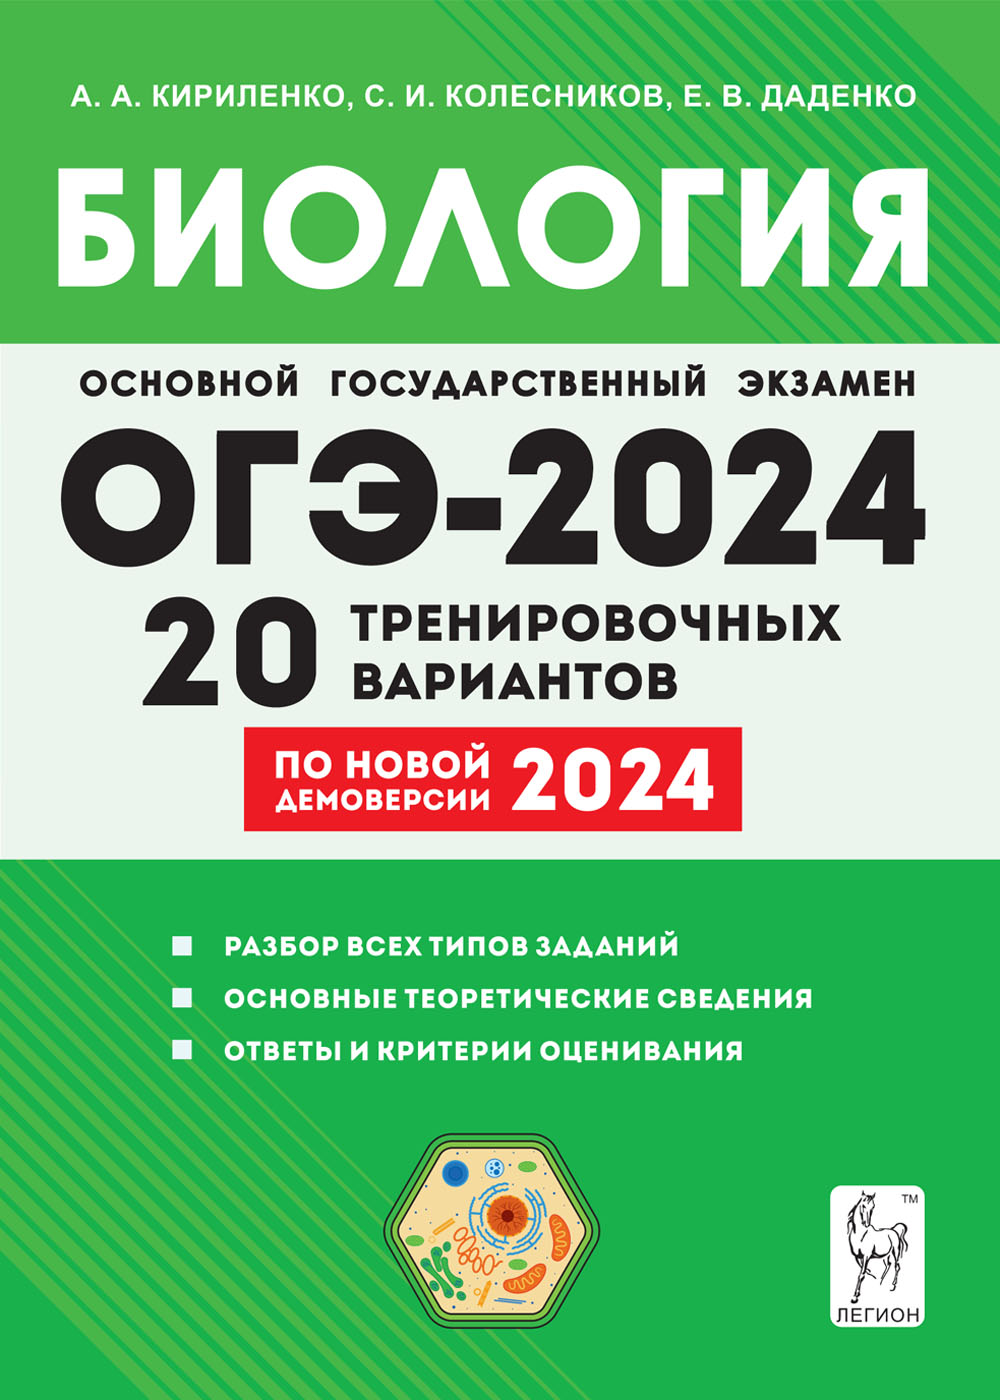 Биология. Подготовка к ОГЭ-2024. 9-й класс. 20 тренировочных вариантов по демоверсии 2024 года